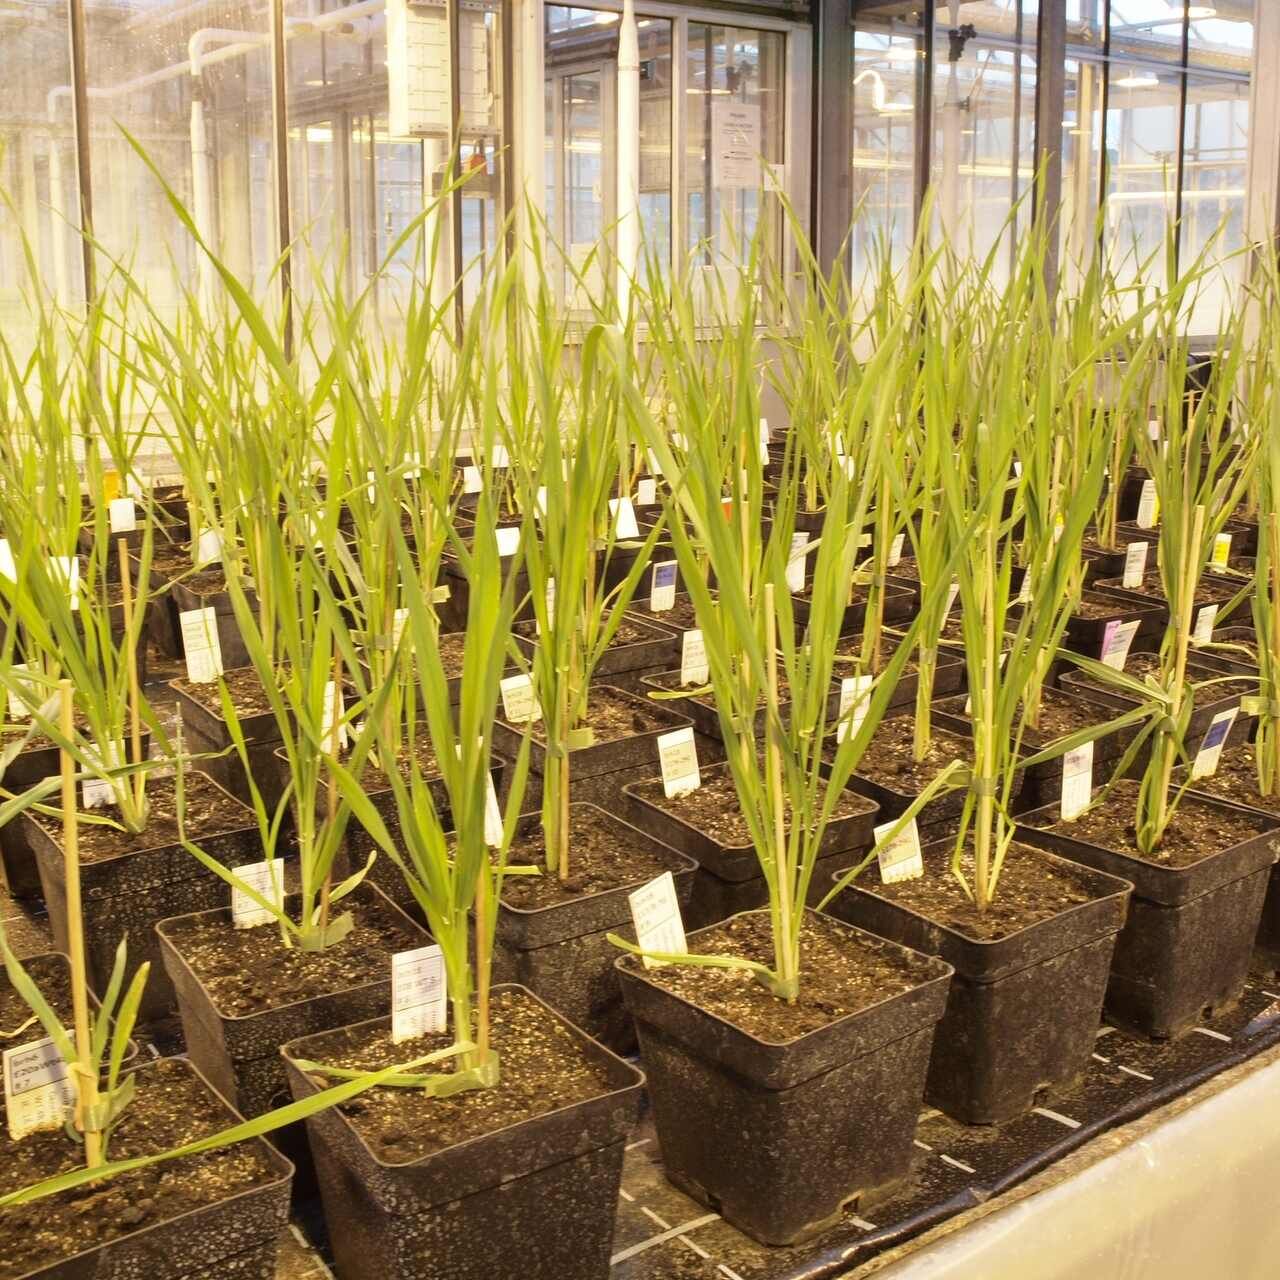 Orz modificat genetic: Agroscope va dobândi cunoștințe de peste trei ani cu privire la comportamentul plantelor în câmp deschis la situl Reckenholz (Zurich) cu autorizație de la Oficiul Federal pentru Mediu